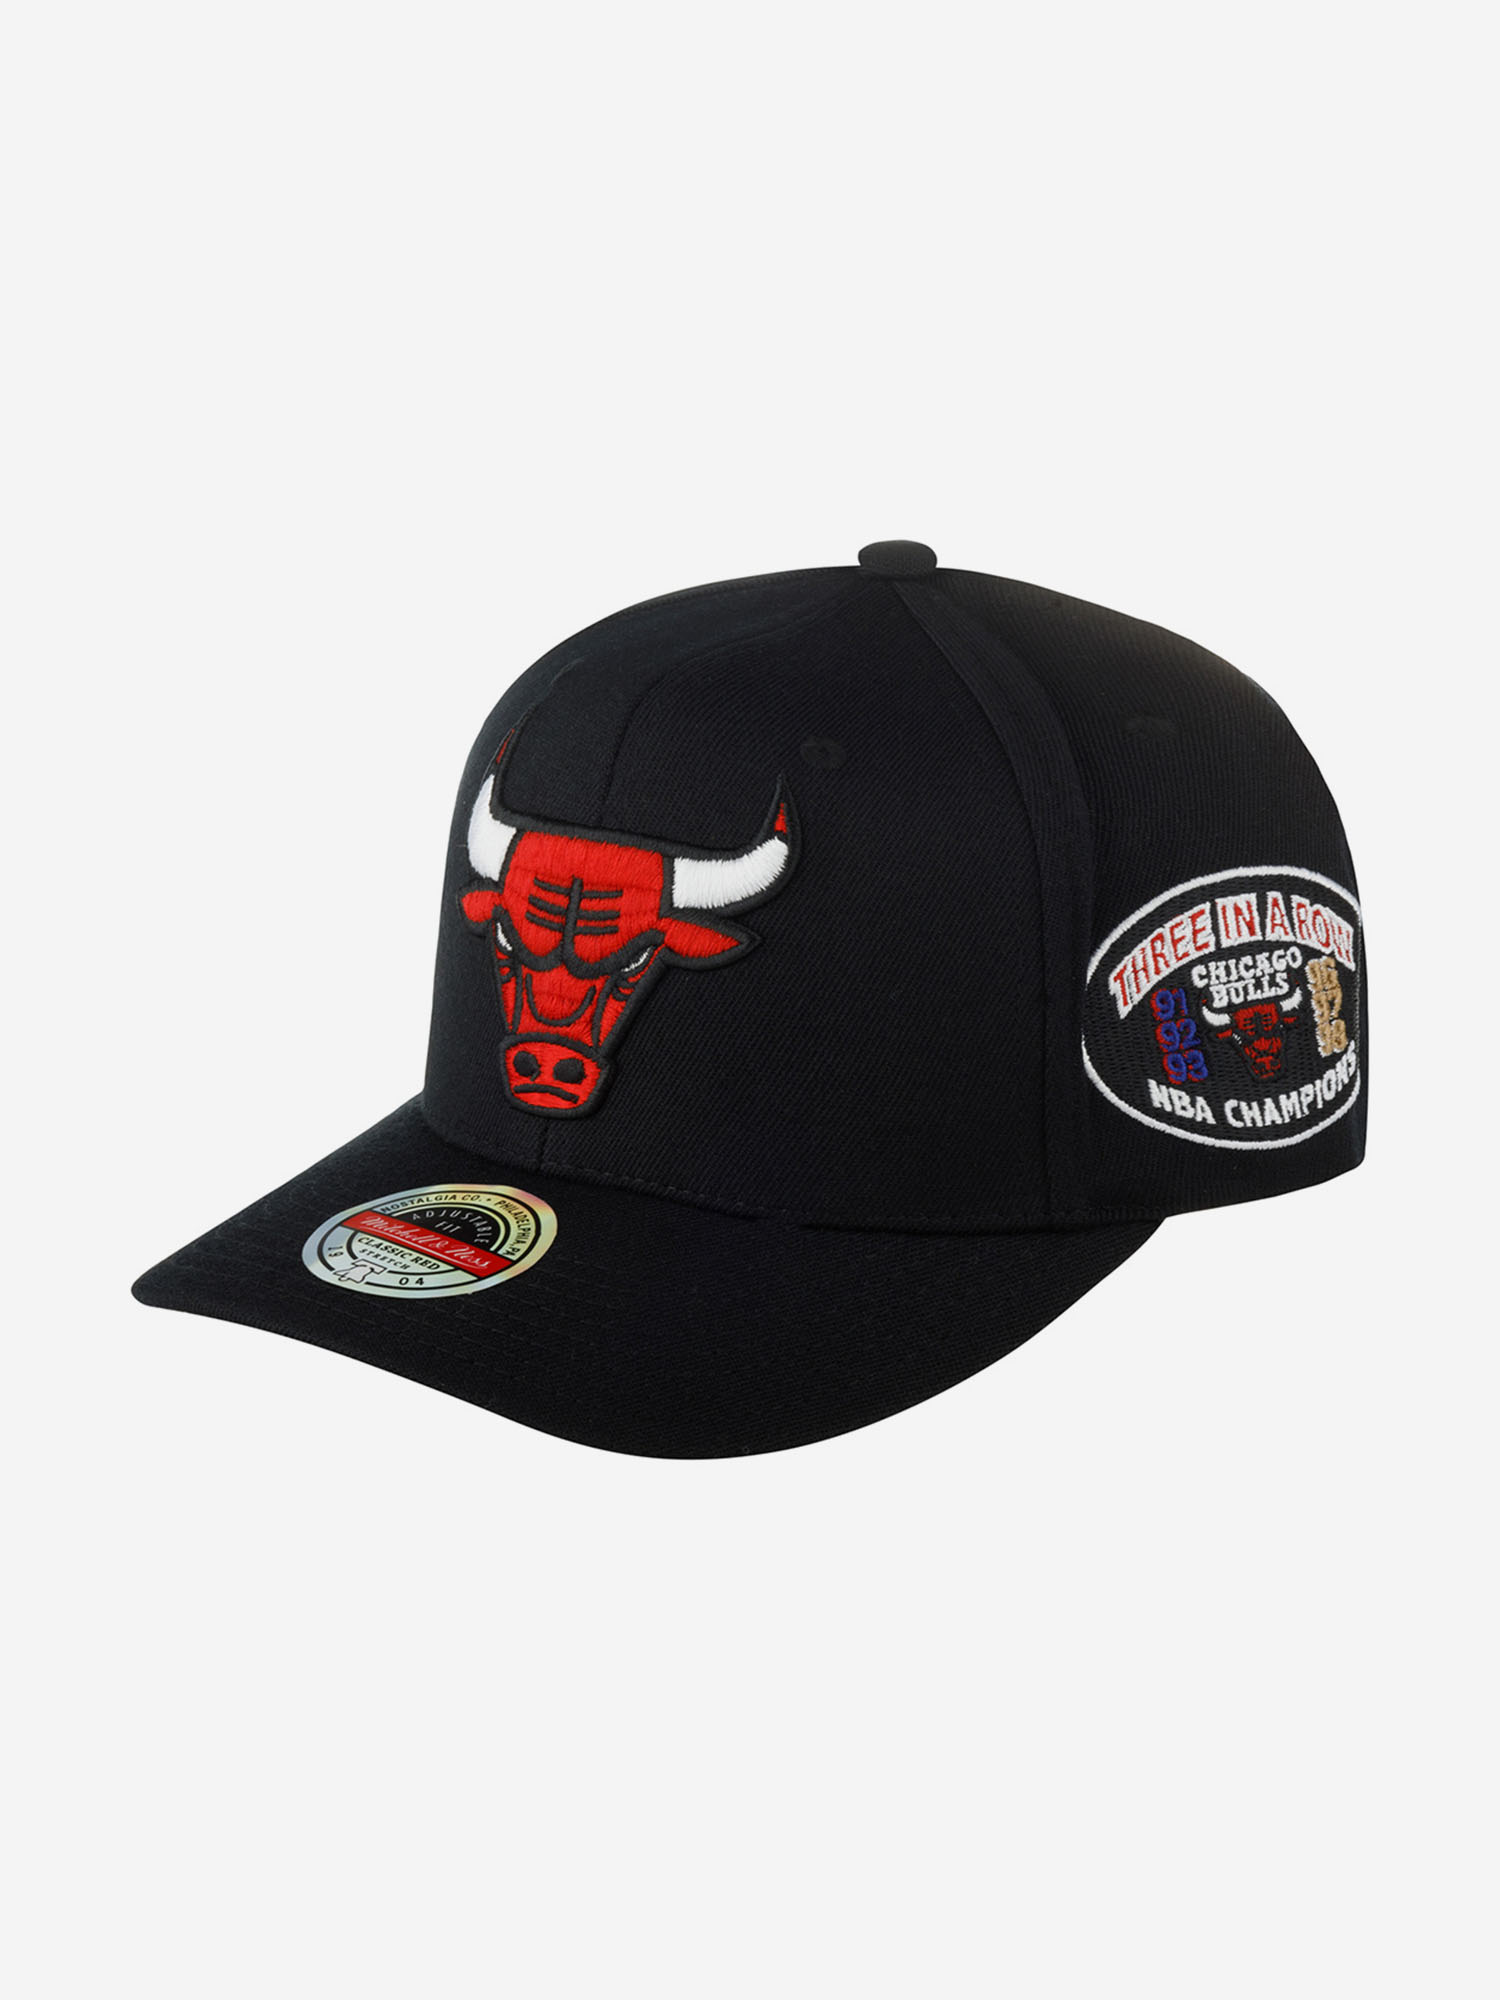 Бейсболка MITCHELL NESS HHSSINTL1266-CBUBLCK Chicago Bulls NBA (черный), Черный